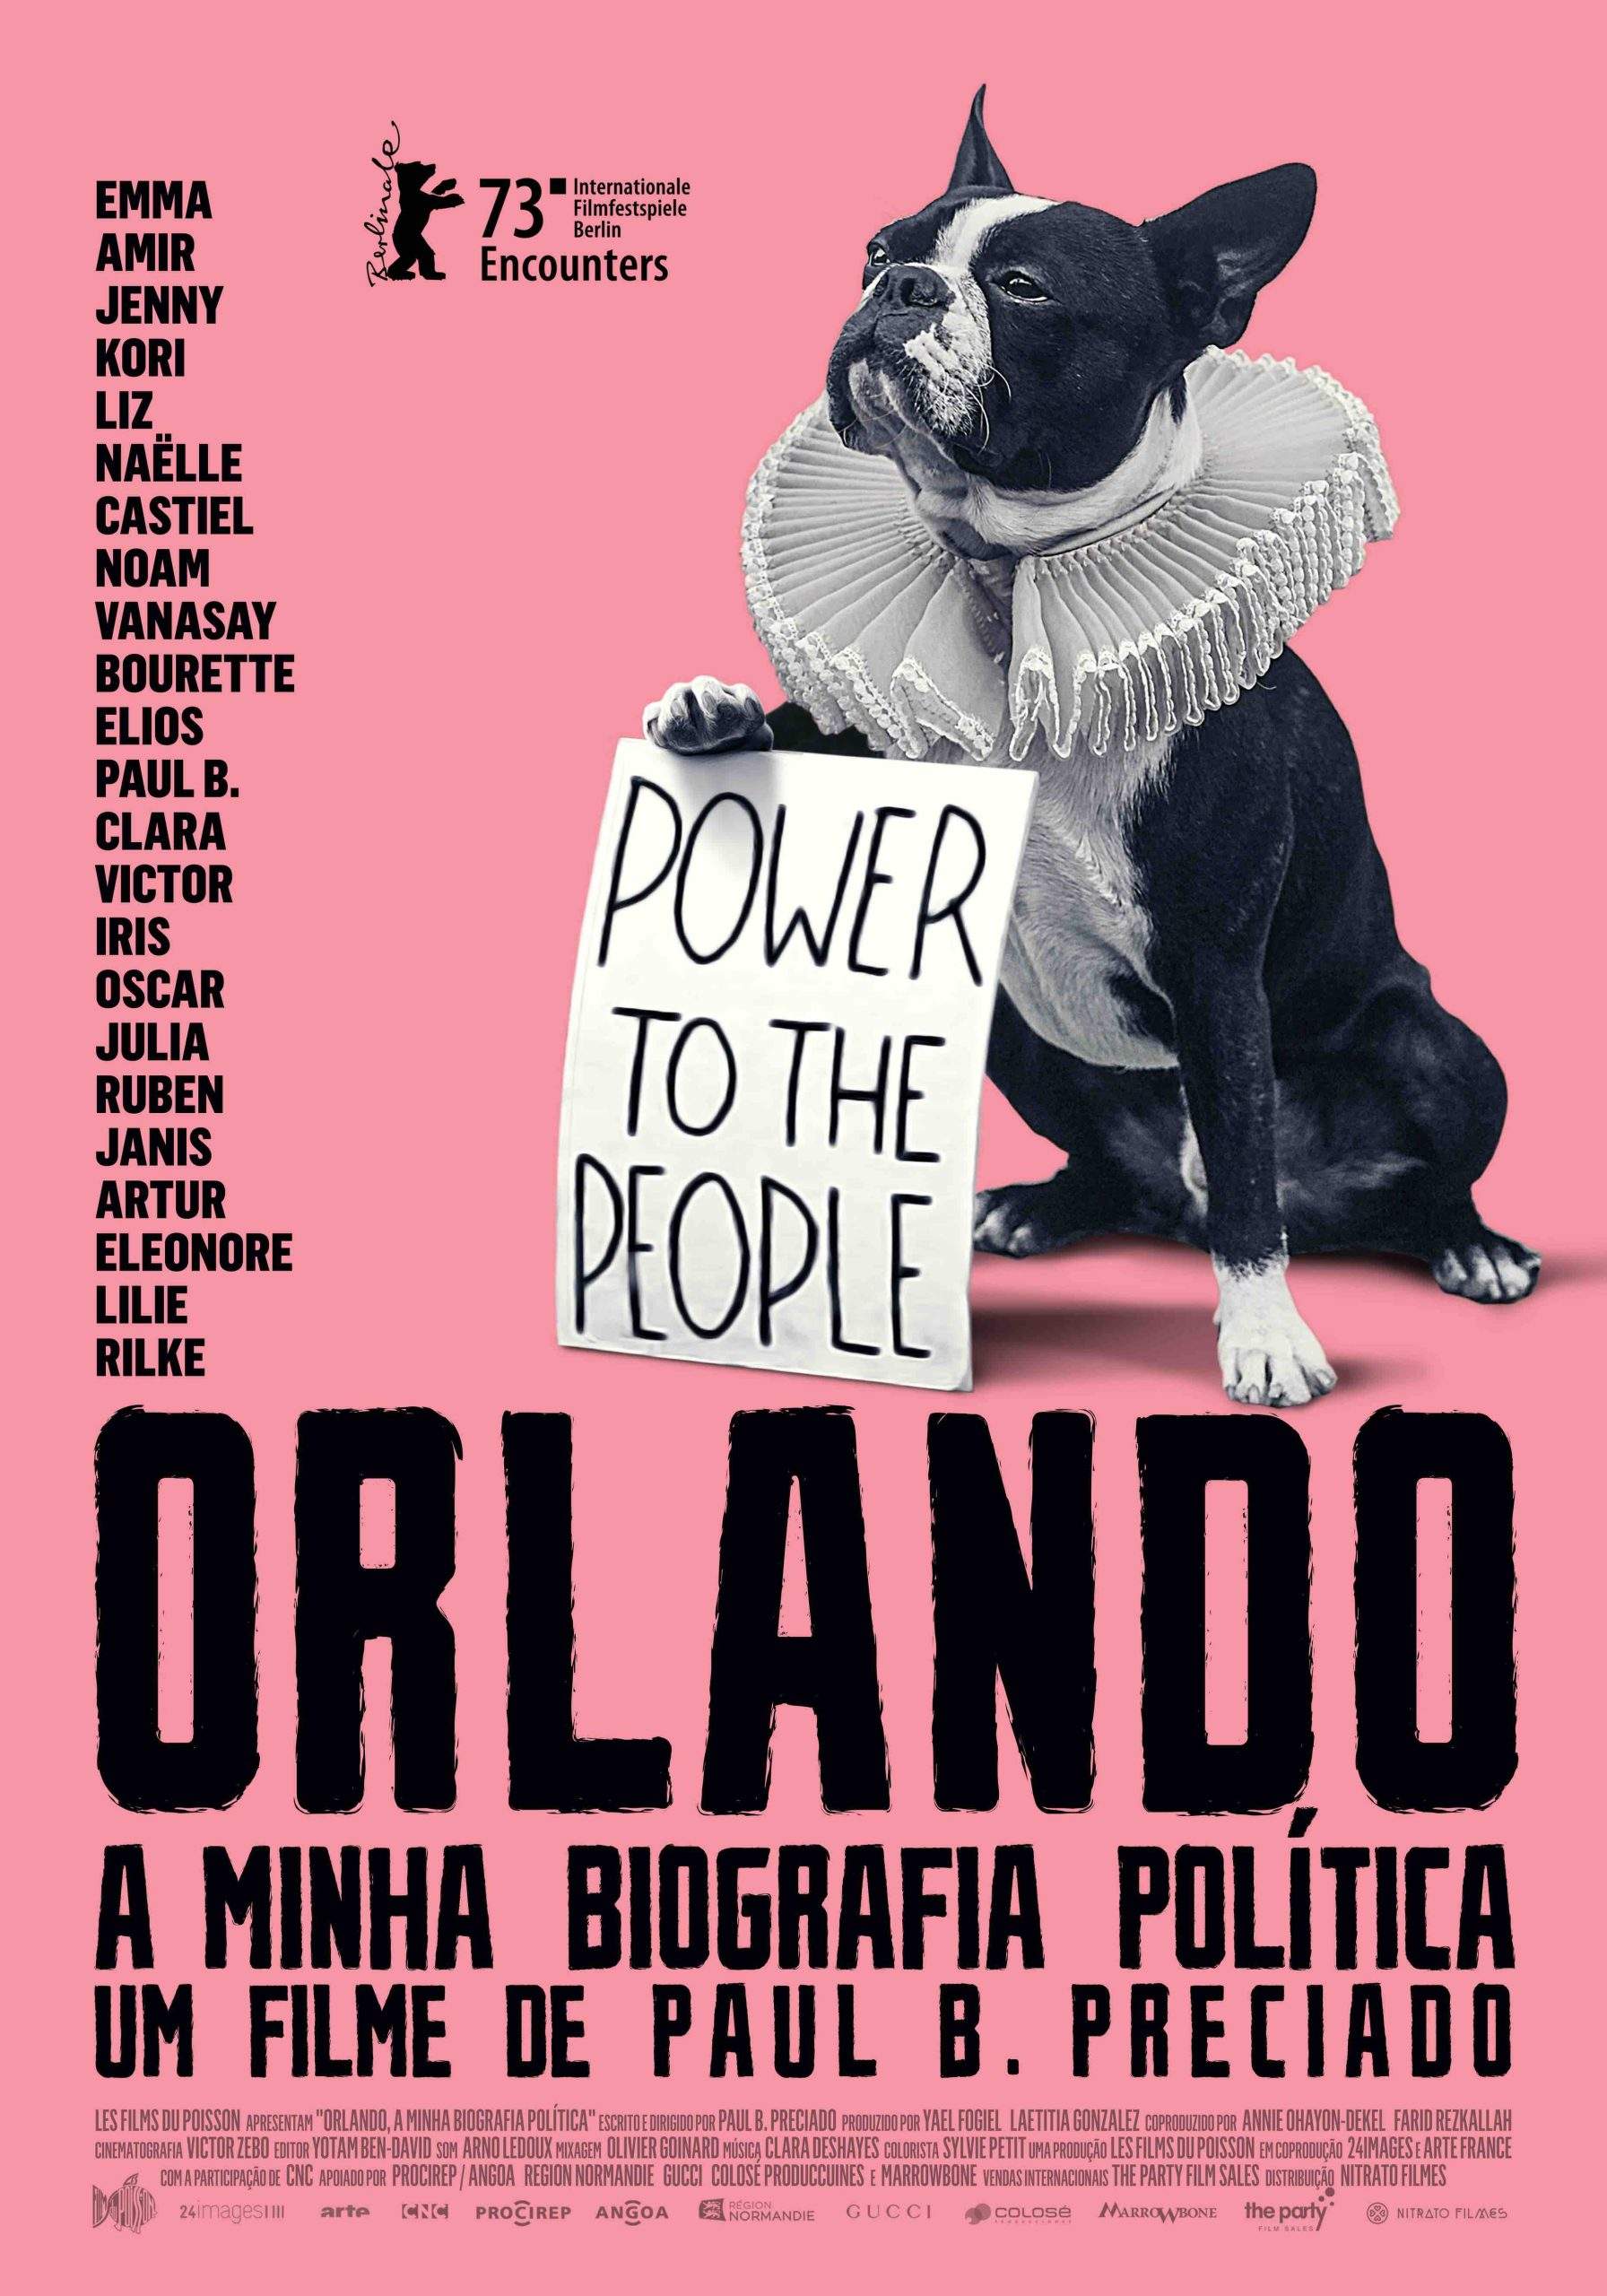 "Orlando, A Minha Biografia Política", de Paul B. Preciado